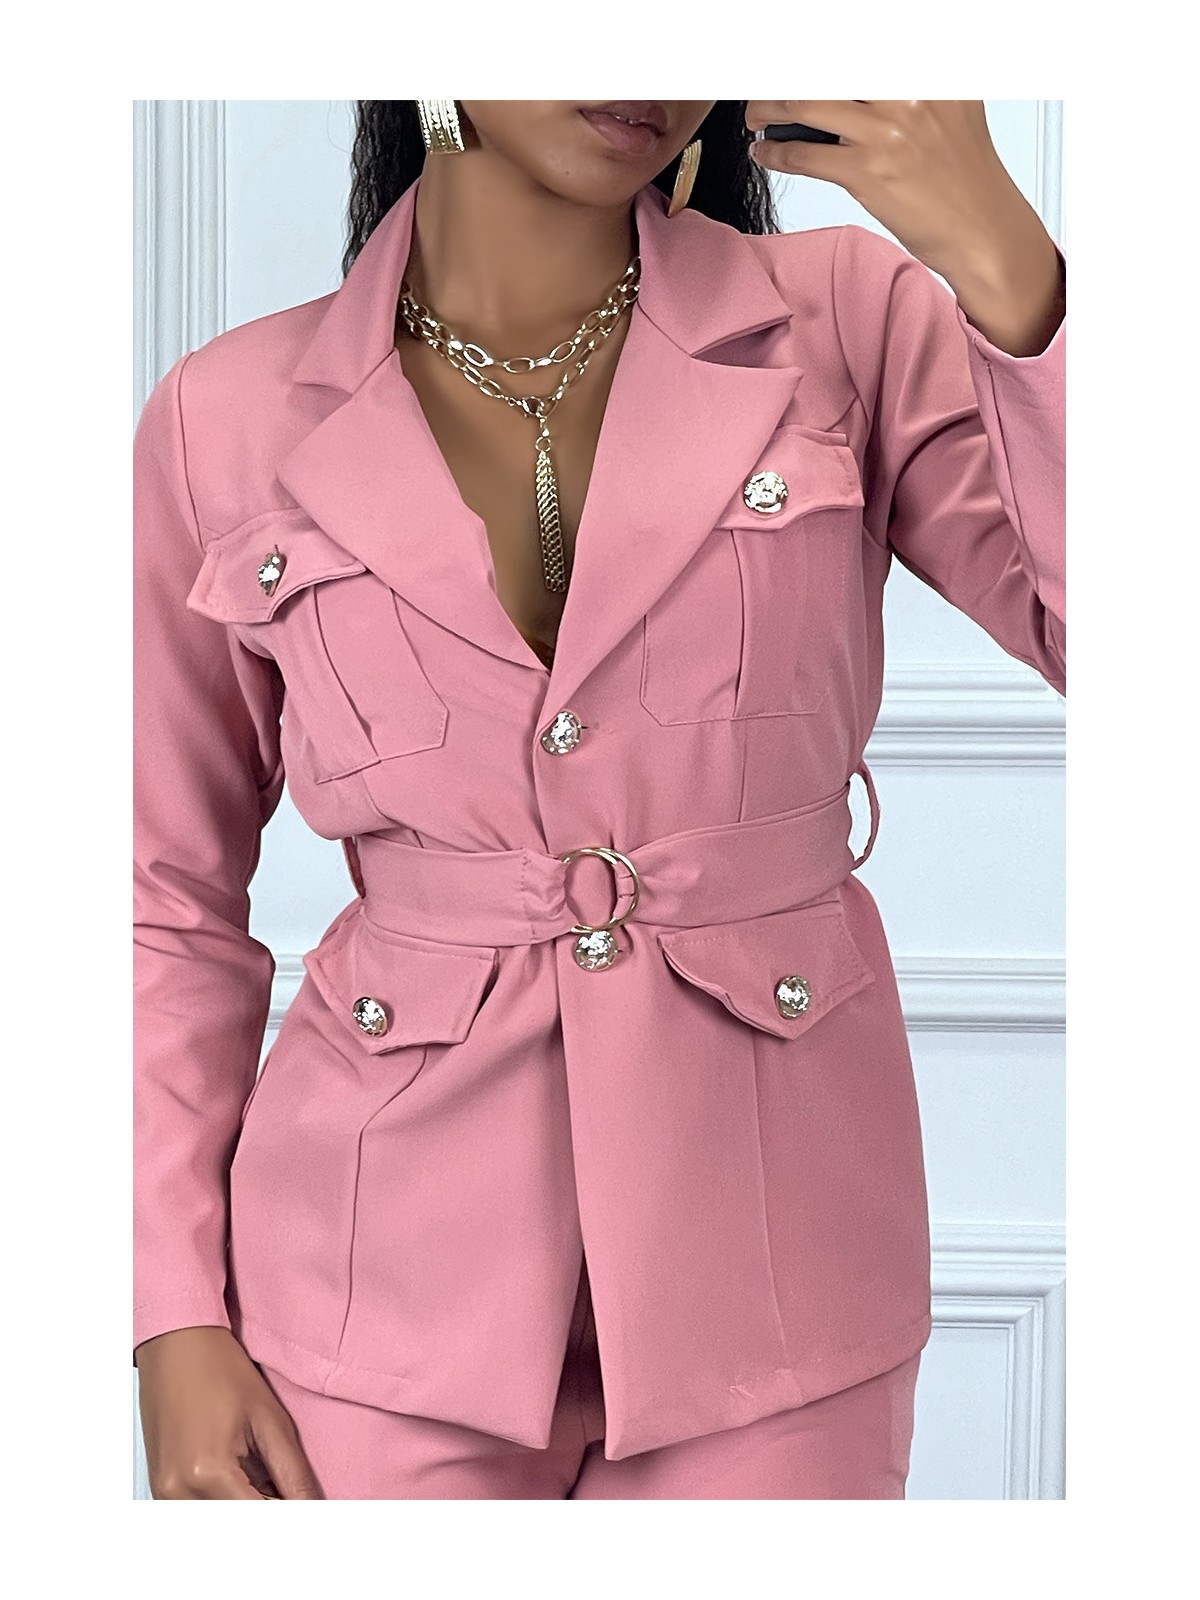 EnPEmble tailleur rose veste et pantalon avec ceinture réglable - 3